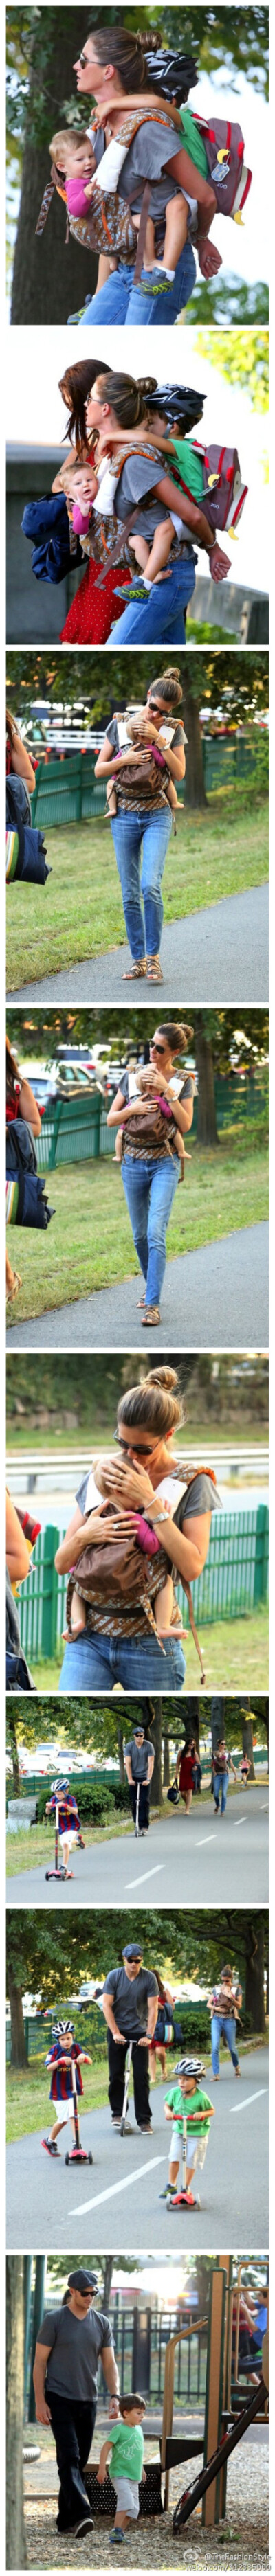 #模特街拍#—— #Gisele Bundchen# and Family at the Park。 2013.08.30 HQ（#高清组图#）#娘娘这背两熊孩子的技巧有够 in！再次感慨！好幸福的一家子啊！#